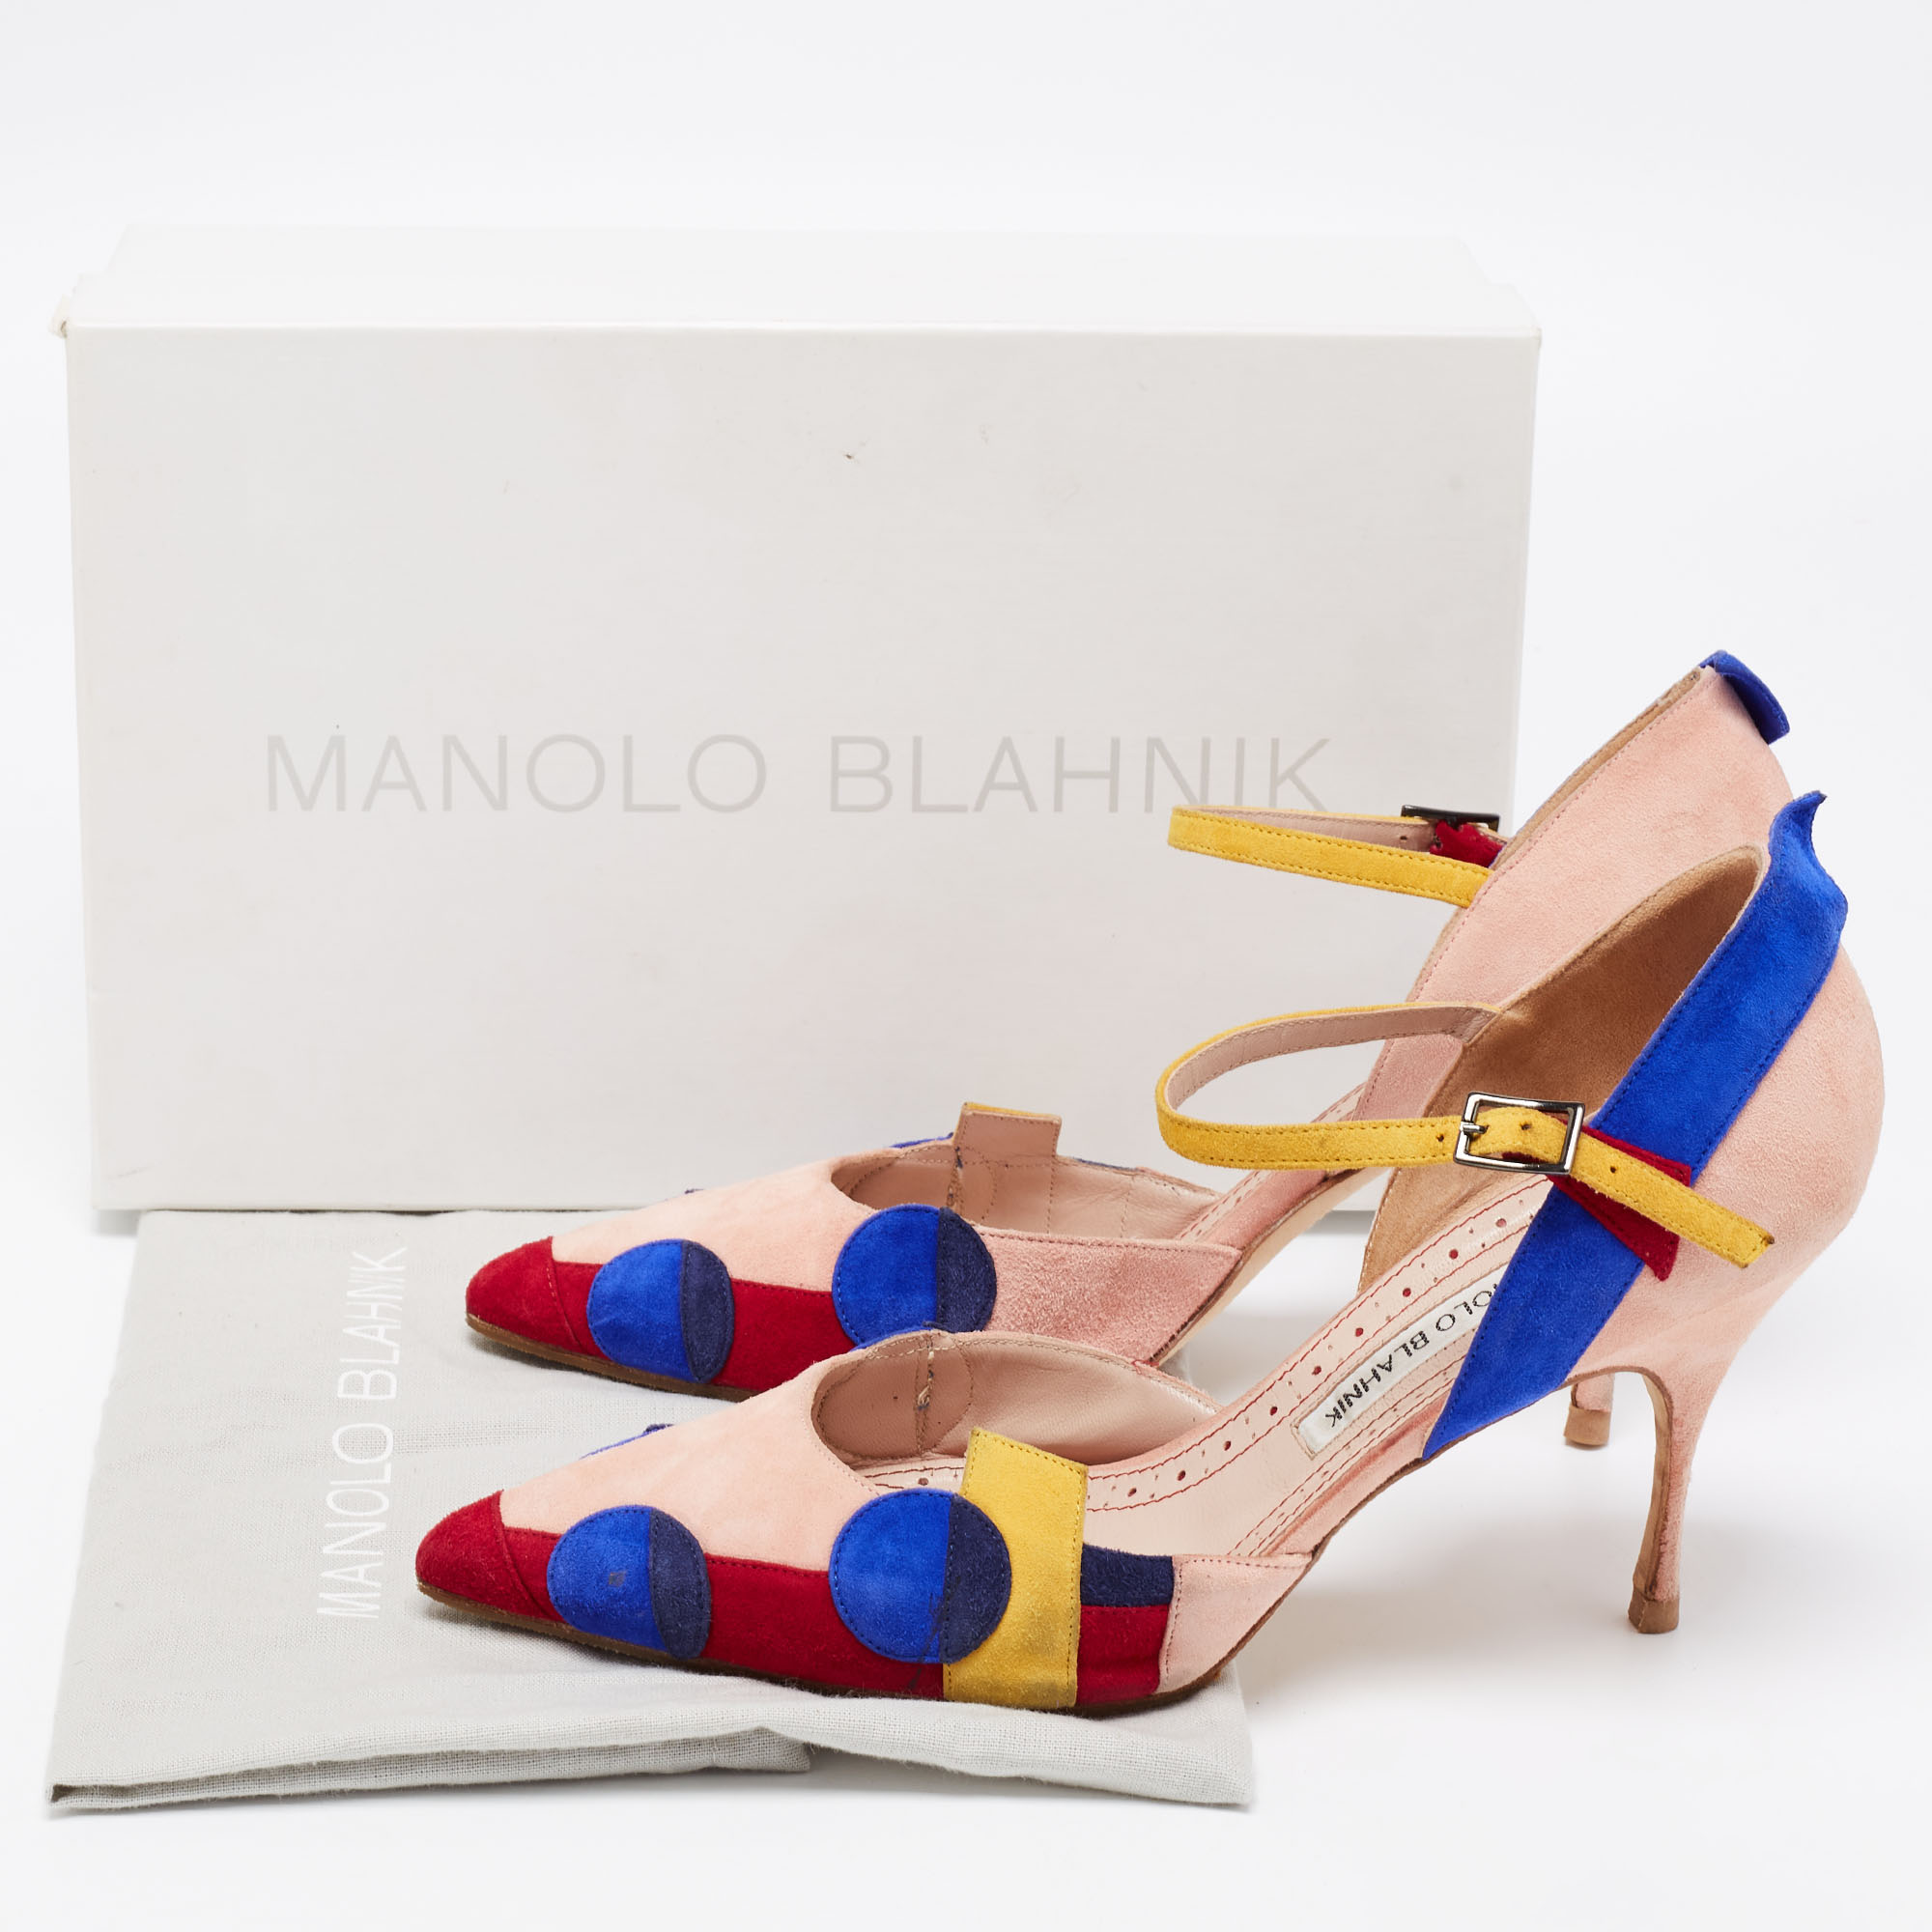 Manolo Blahnik Multicolor Suede Ankle Strap  Pumps Size 39.5